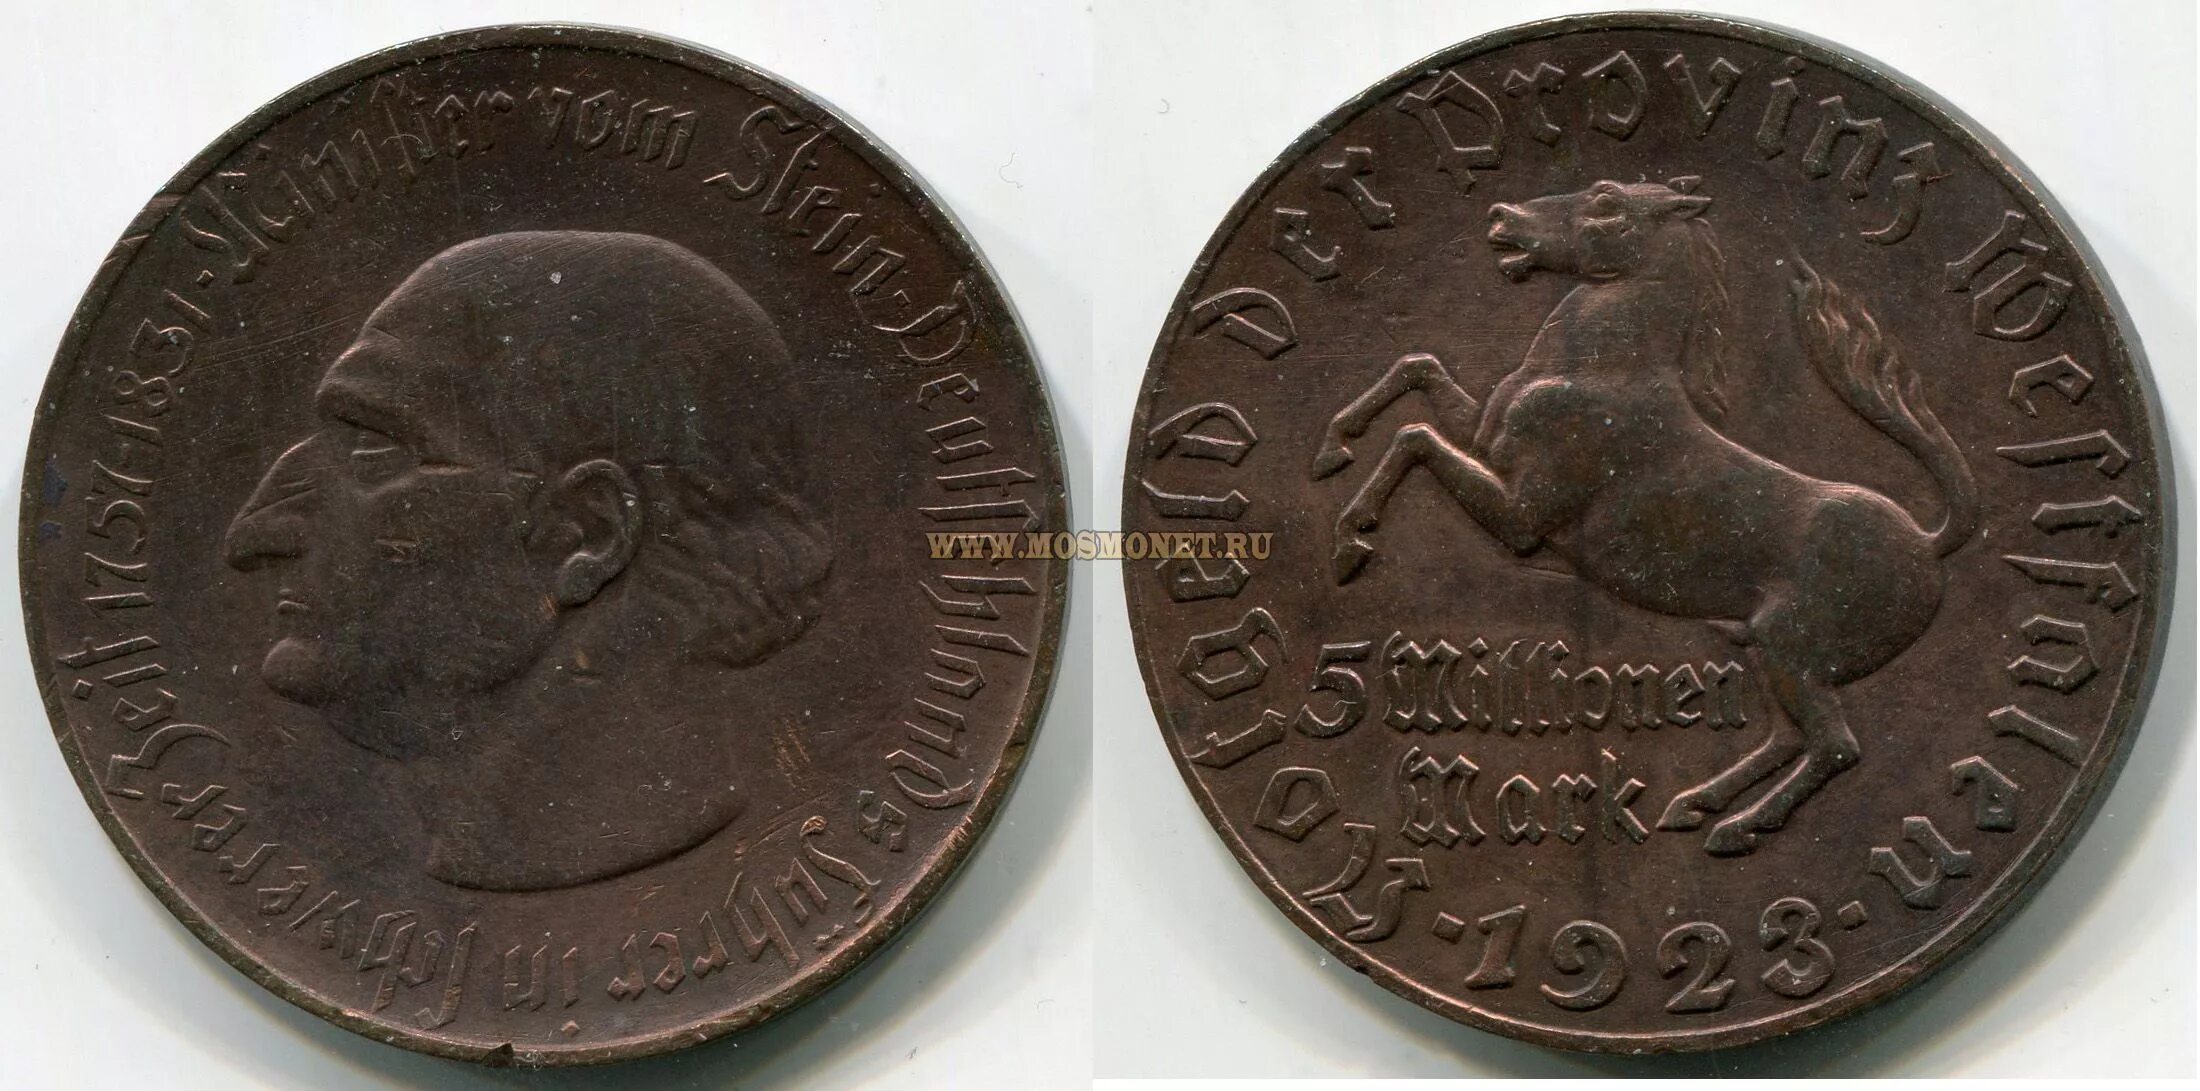 Немецкие 5 в рубли. Монета (нотгельд) 50 миллионов марок 1923 года. Германия (Вестфалия). 5 Млн марок Германия 1923. 50 Миллионов марок 1923 монета. Немецкая монета 1757-1831  пять миллионов марок.